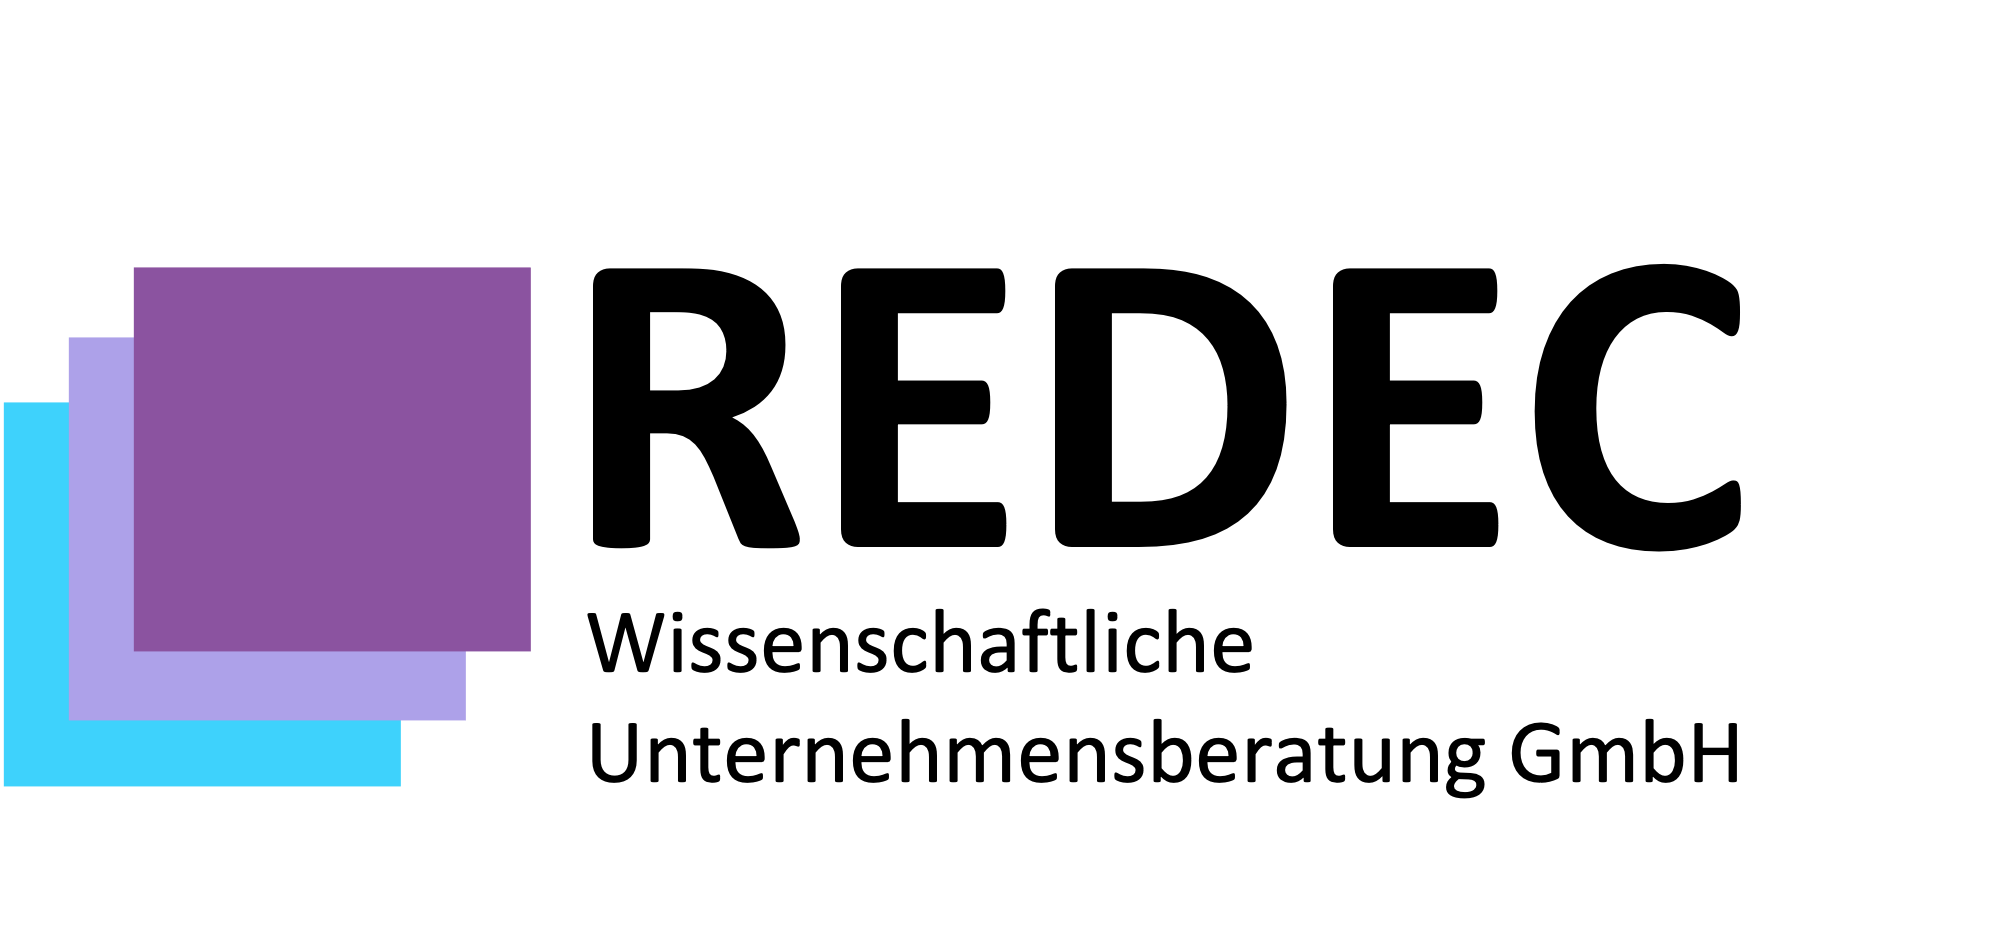 REDEC Wissenschaftliche Unternehmensberatung